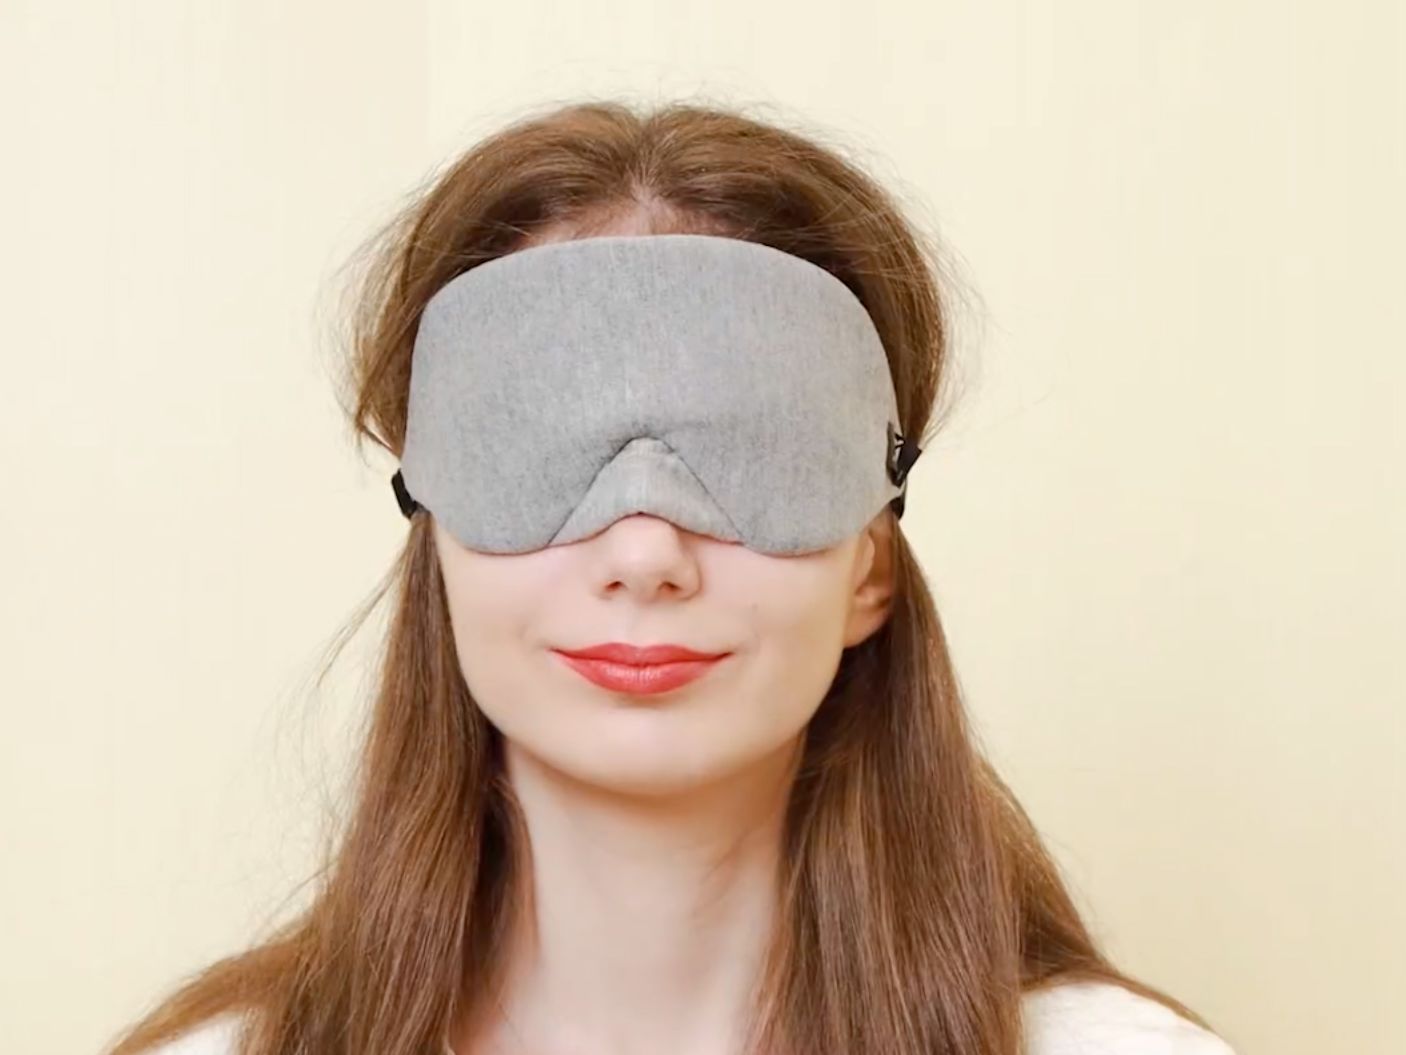 Mavogel's Cotton Sleep Eye Mask